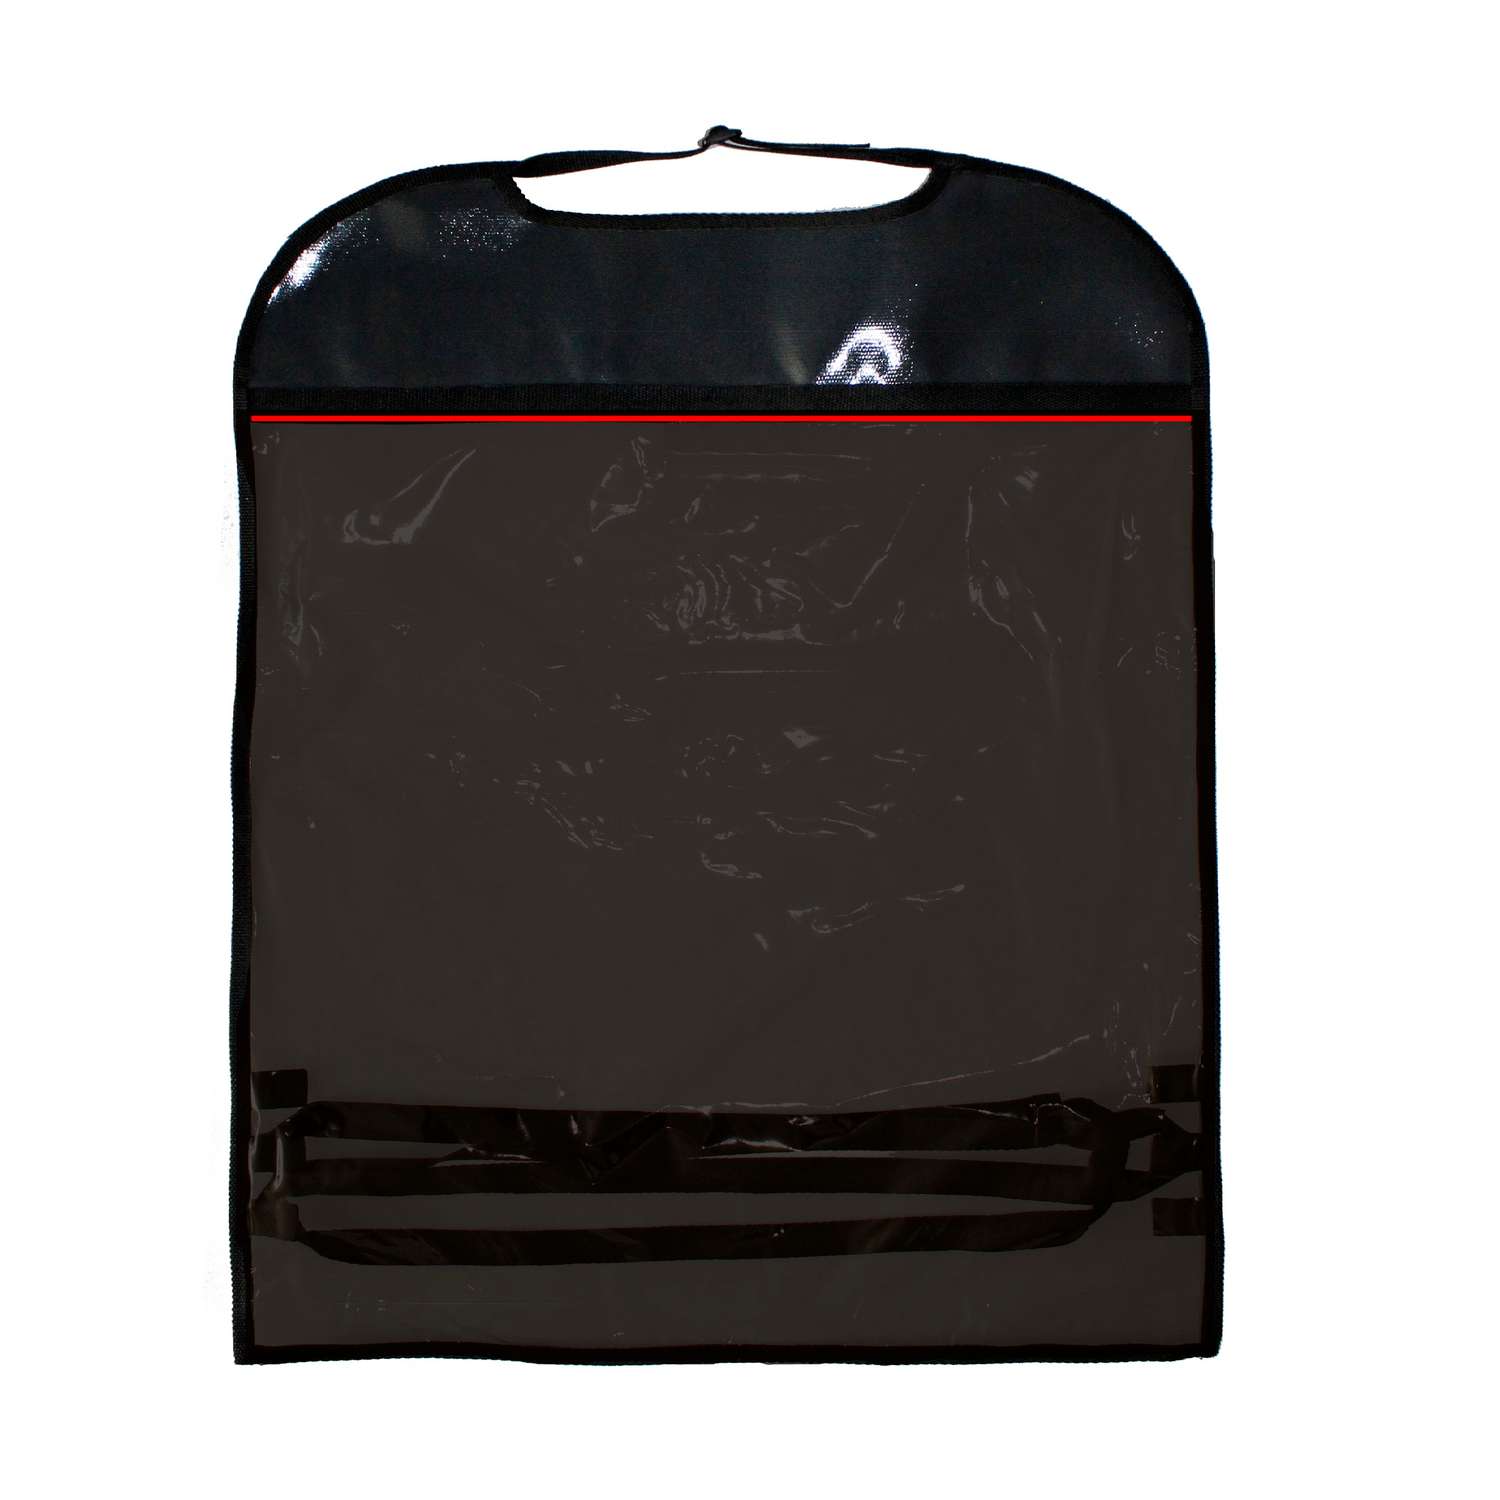 Защита на спинку автокресла Belon familia цвет черный красный вид 6 Размер 50х70 см - фото 1